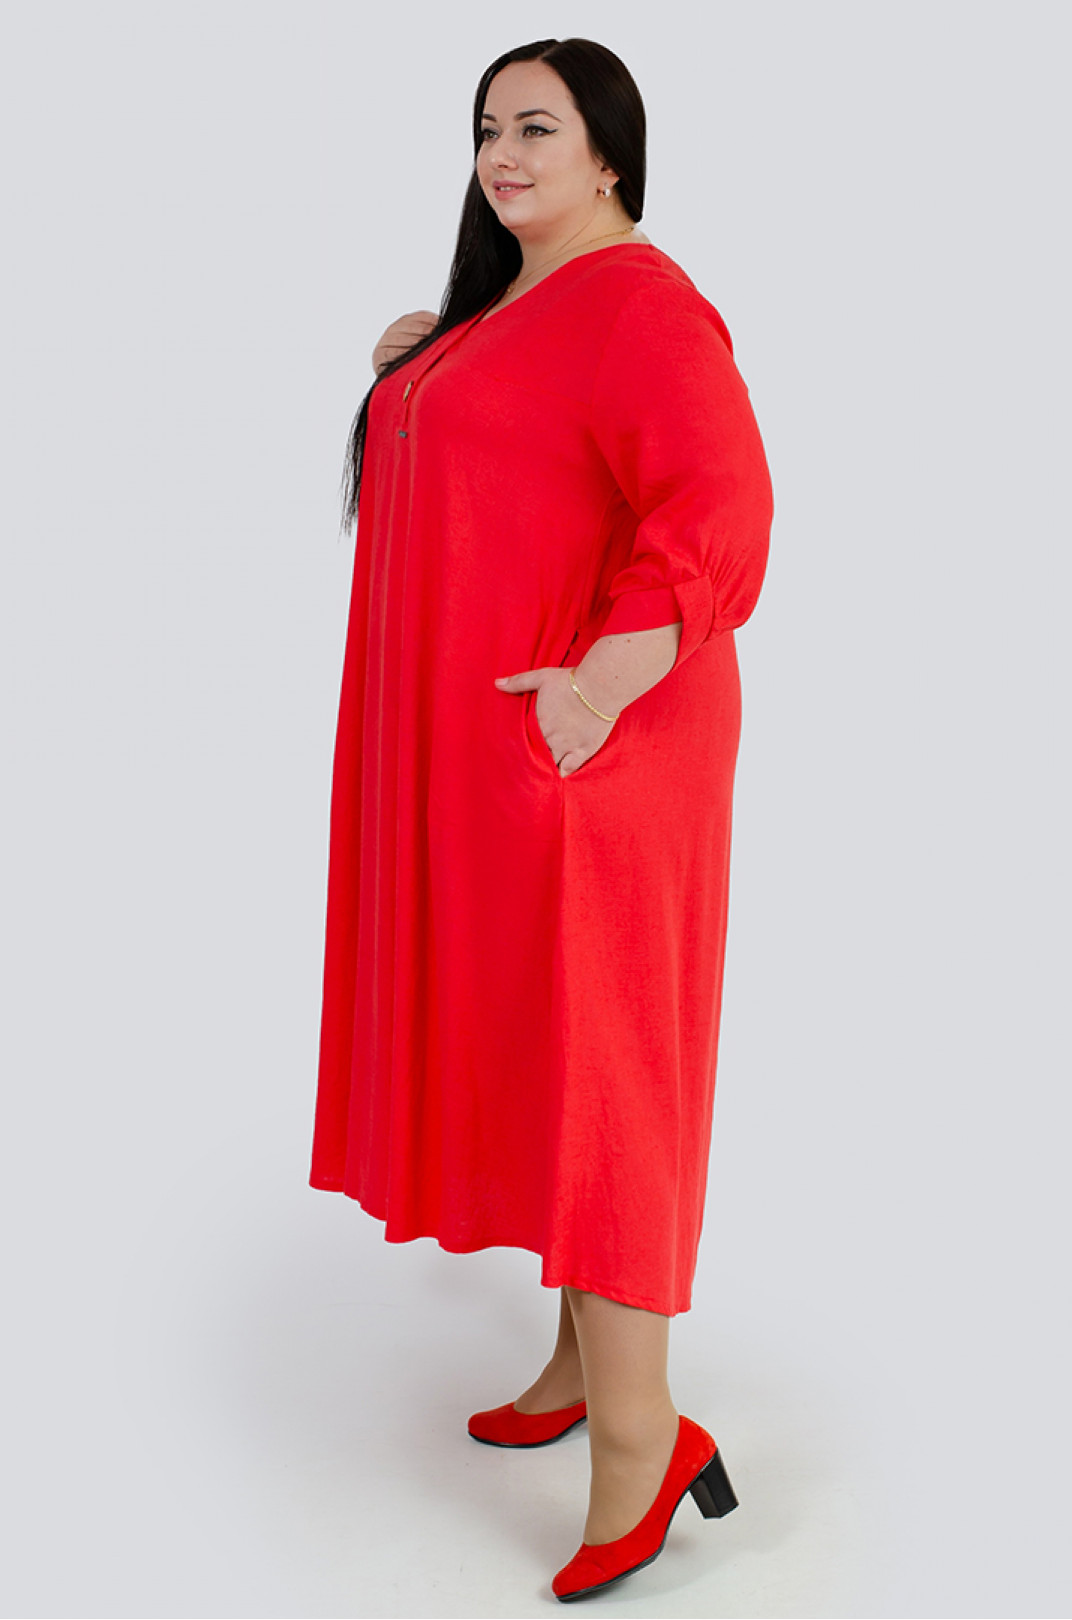 Вишукана червона льняна сукня великих розмірів